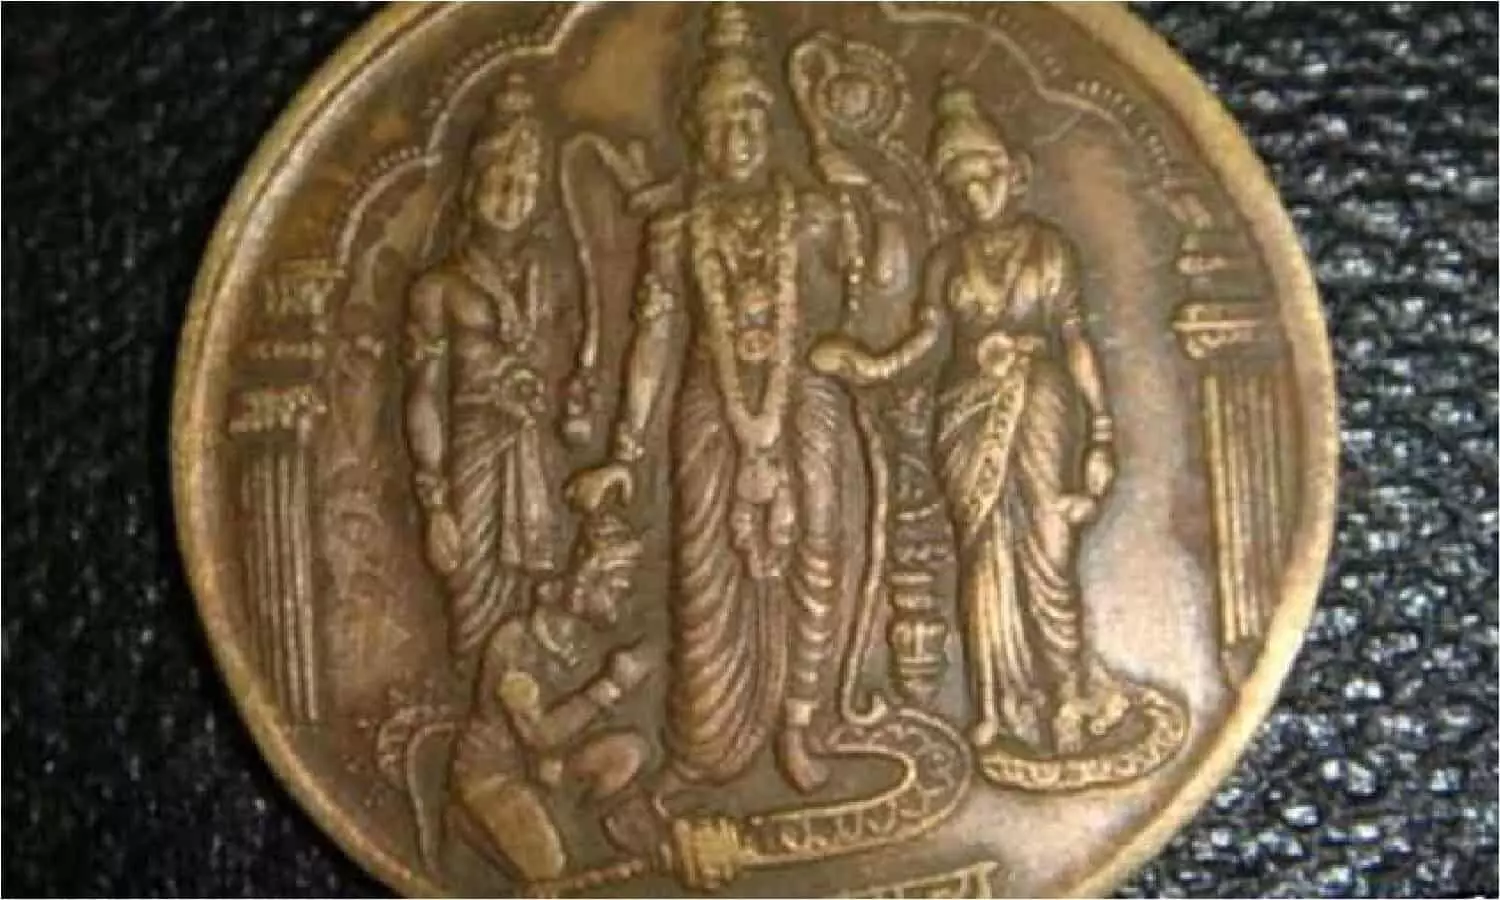 मुगल बादशाह अकबर के द्वारा बनवाया गया दुर्लभ सिक्का 800000000 रूपए में बिका